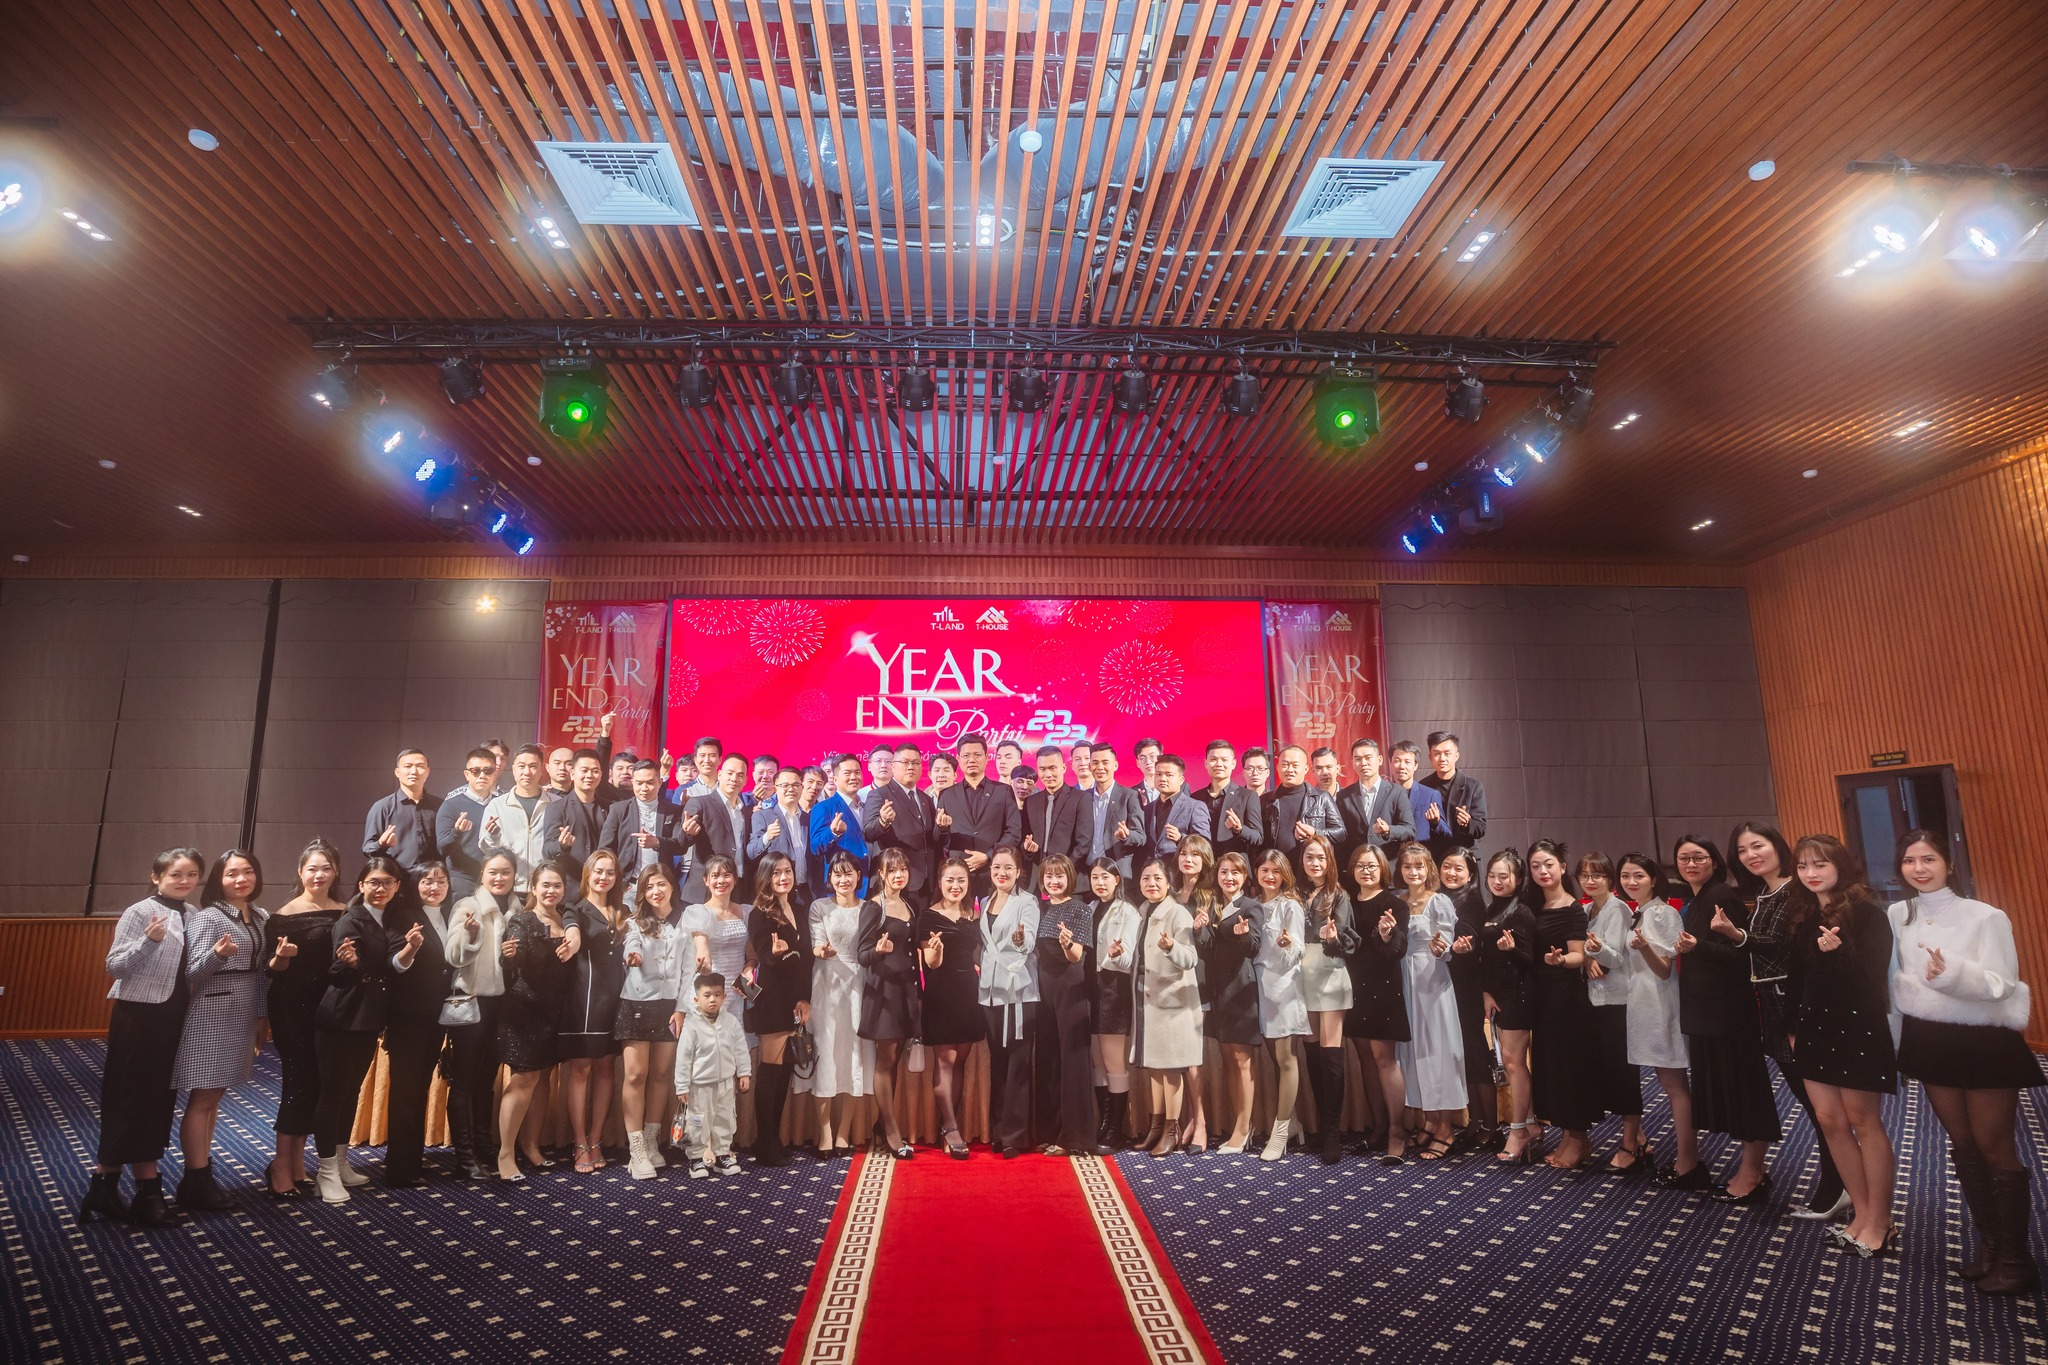 Year End Party Tland 2023 – Vững Nền Tảng, Sáng Tương Lai